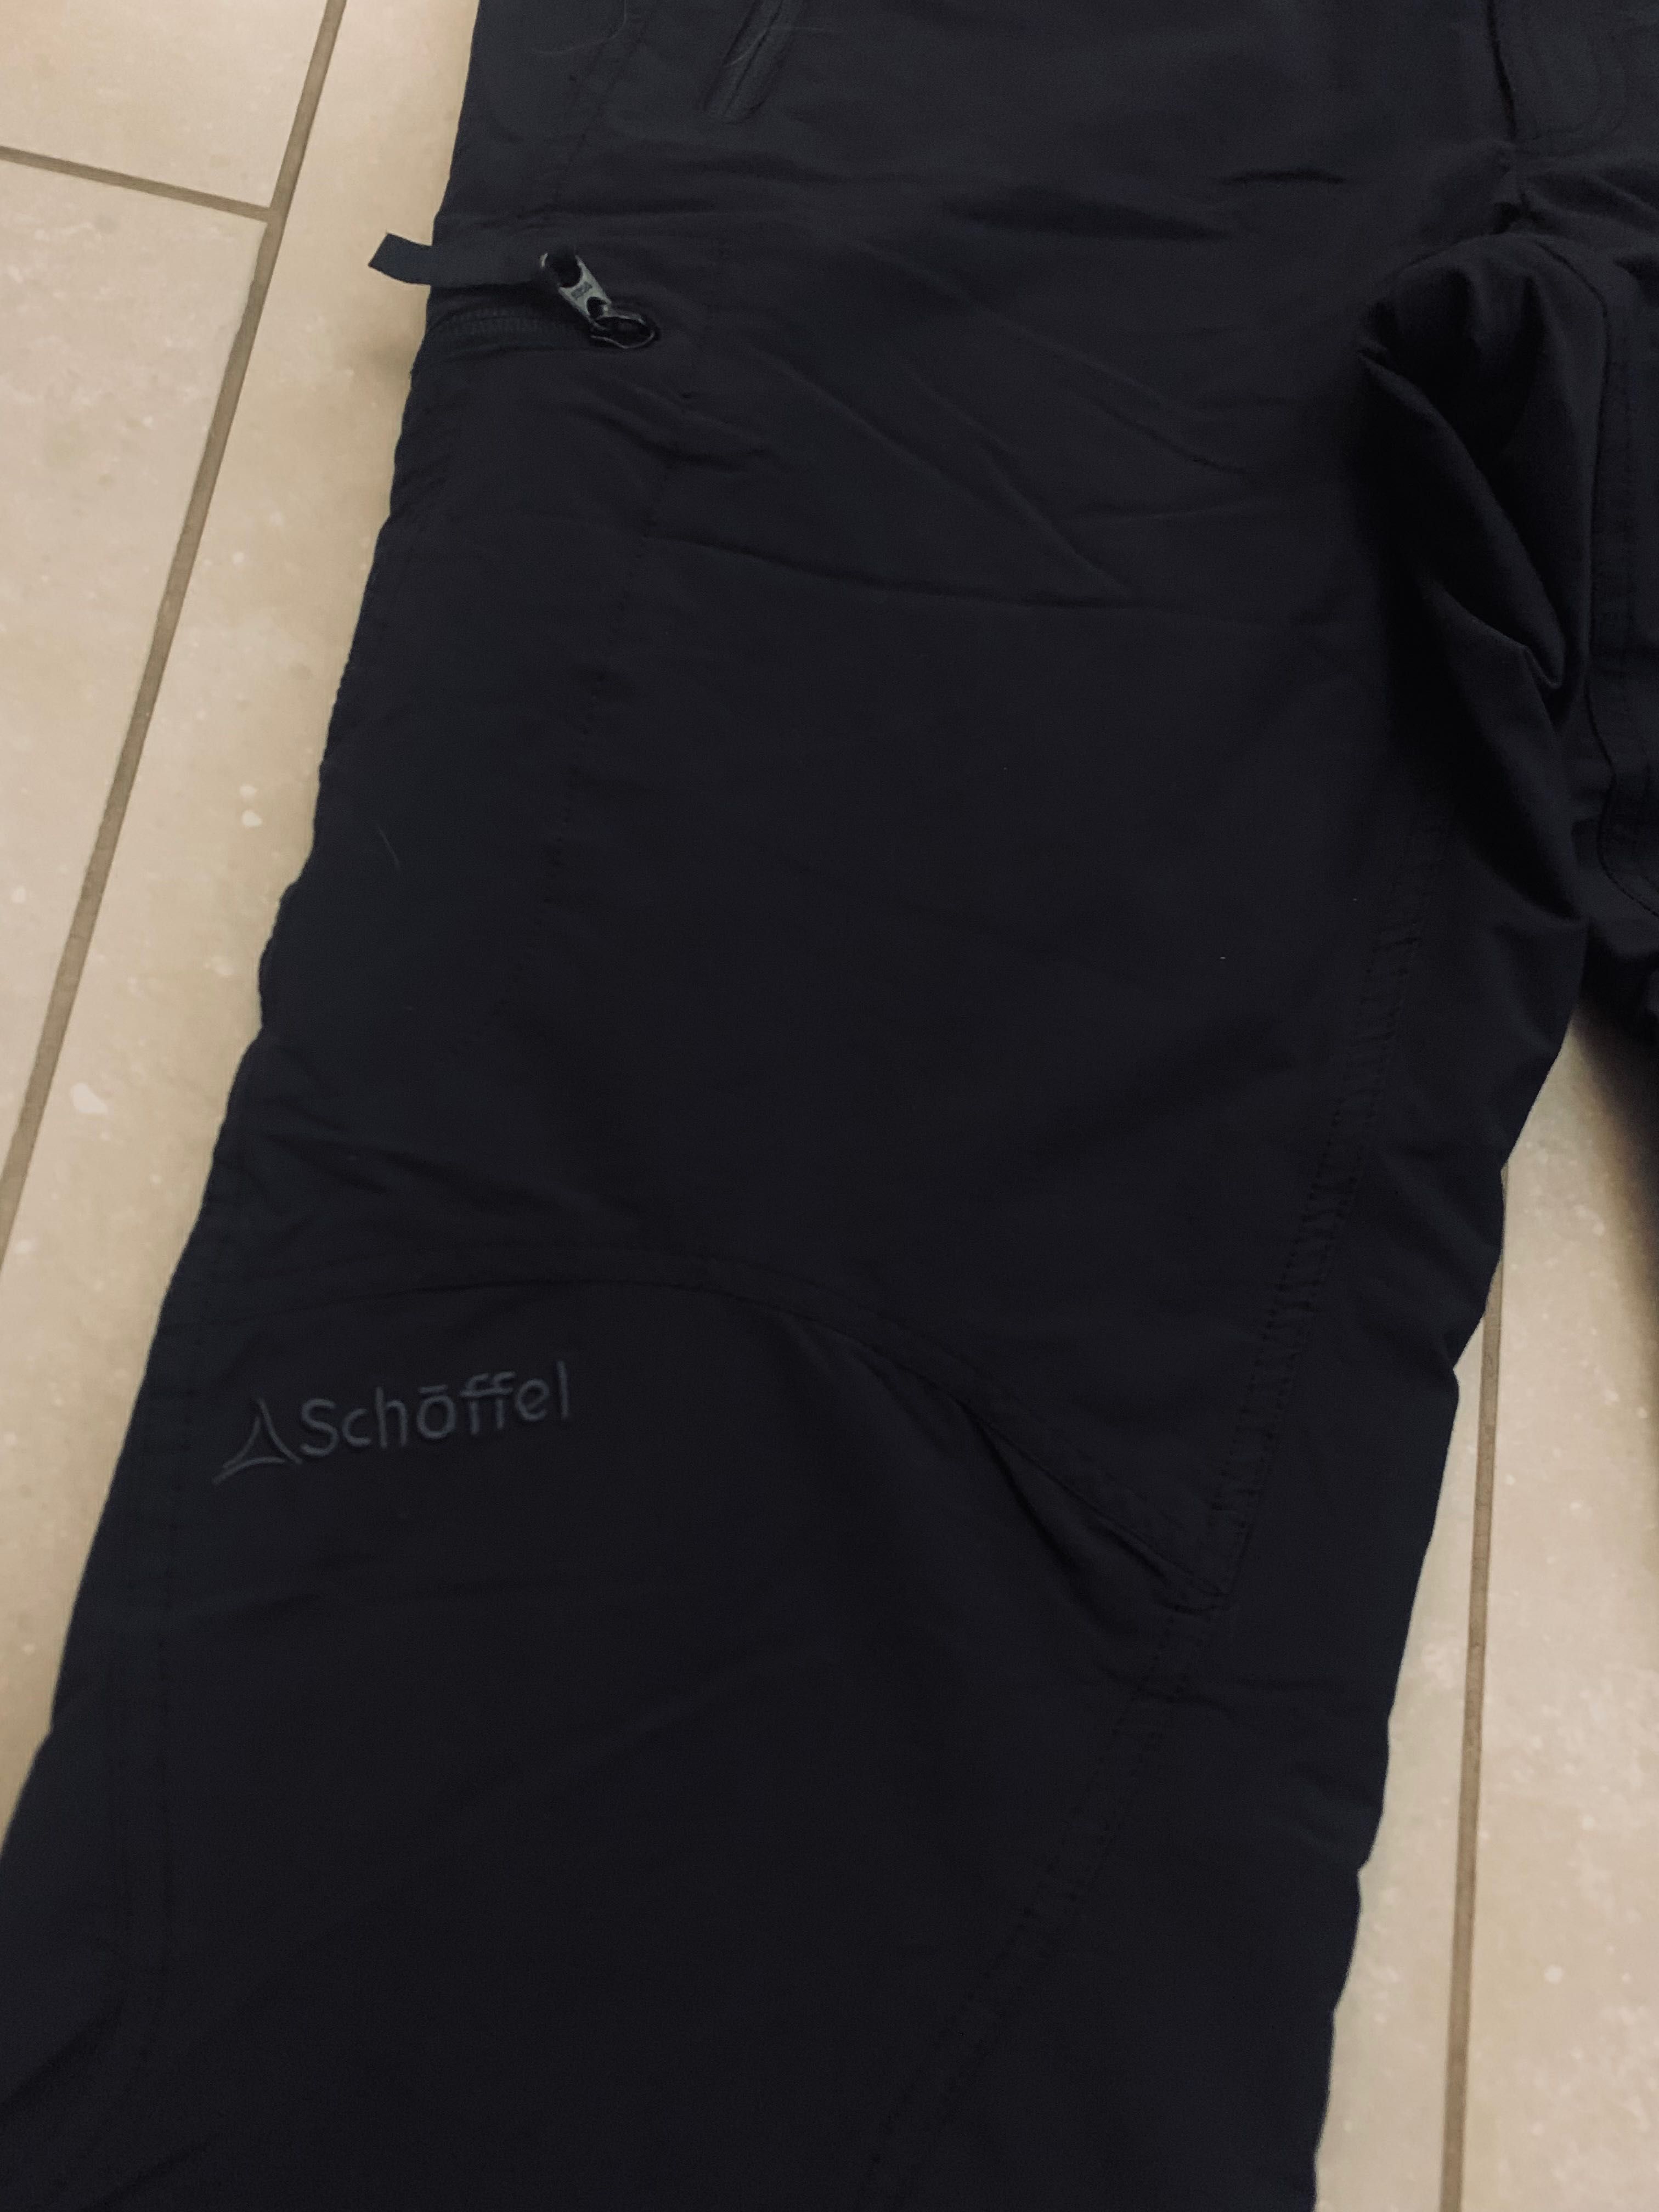 Schöffel Trenton trekkingowe r. 50 sportowe spodnie, czarne unisex